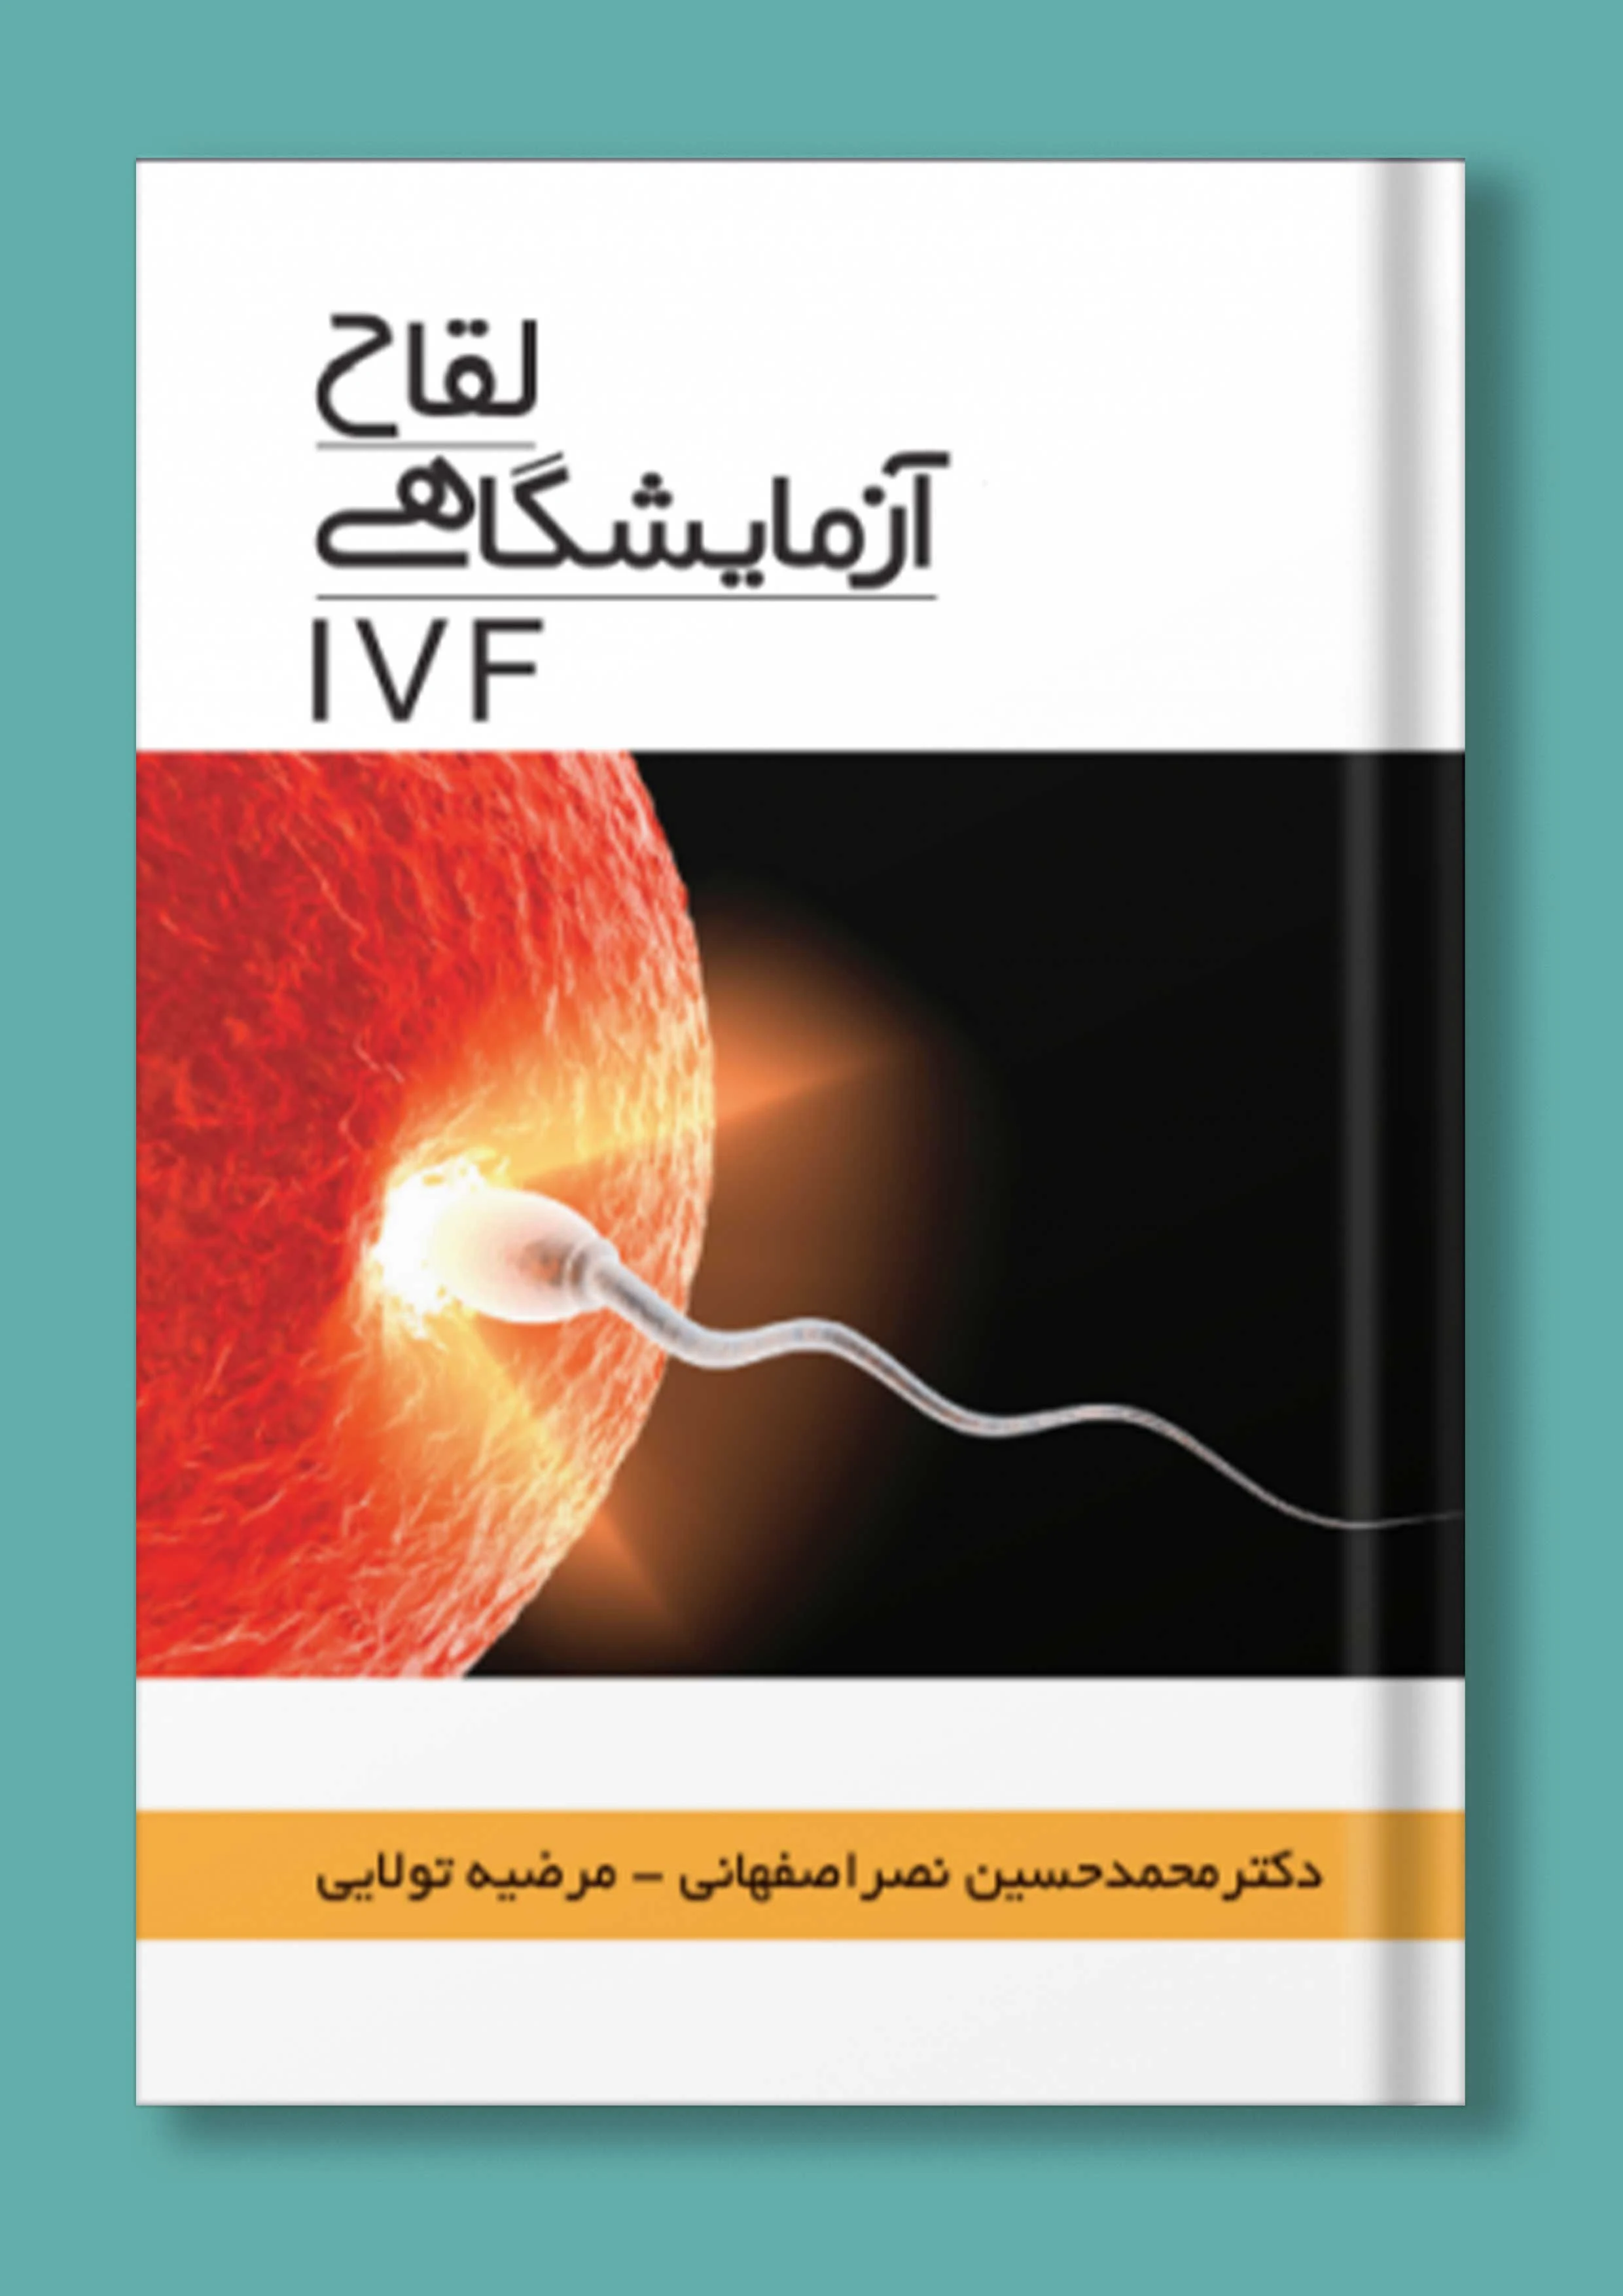 لقاح آزمایشگاهی (IVF)